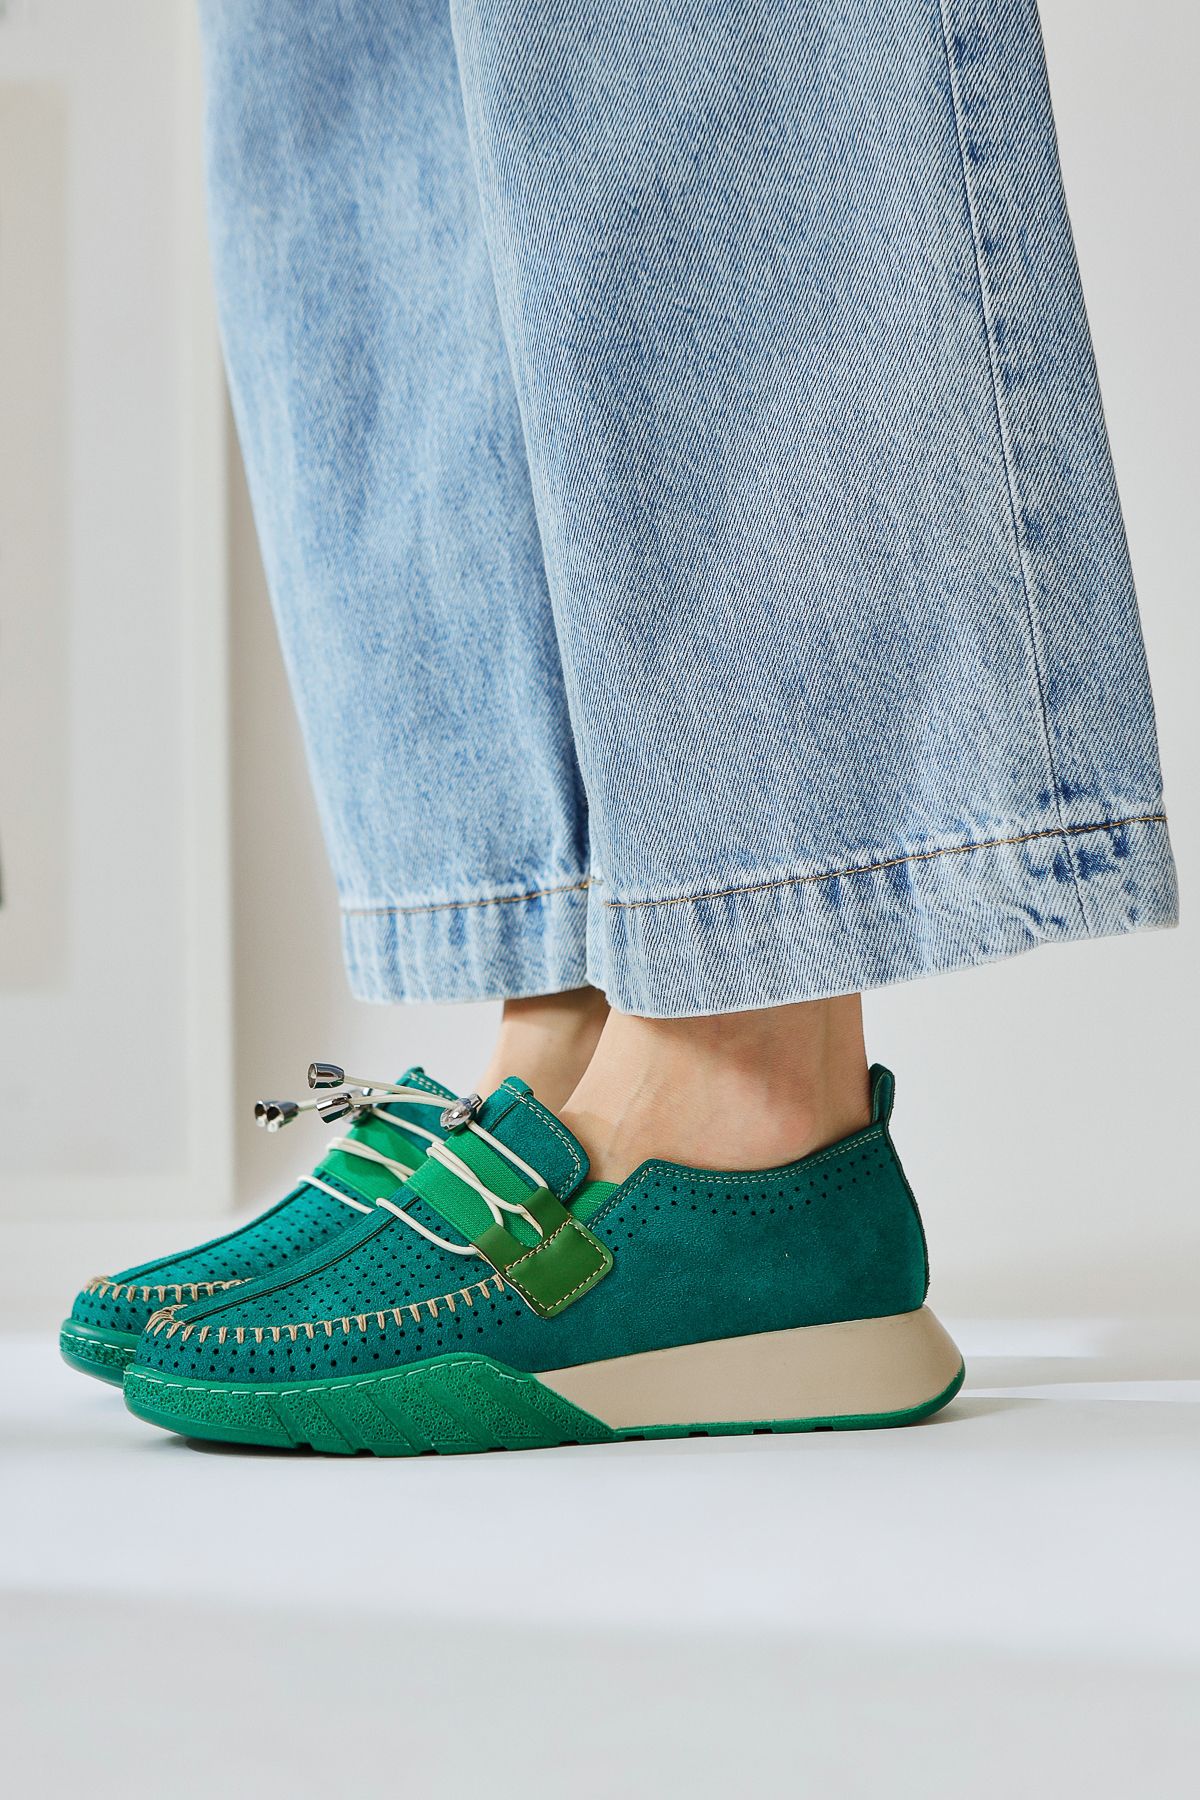 Limoya Allice Yeşil Süet Lazer Delikli Günlük Ayakkabı